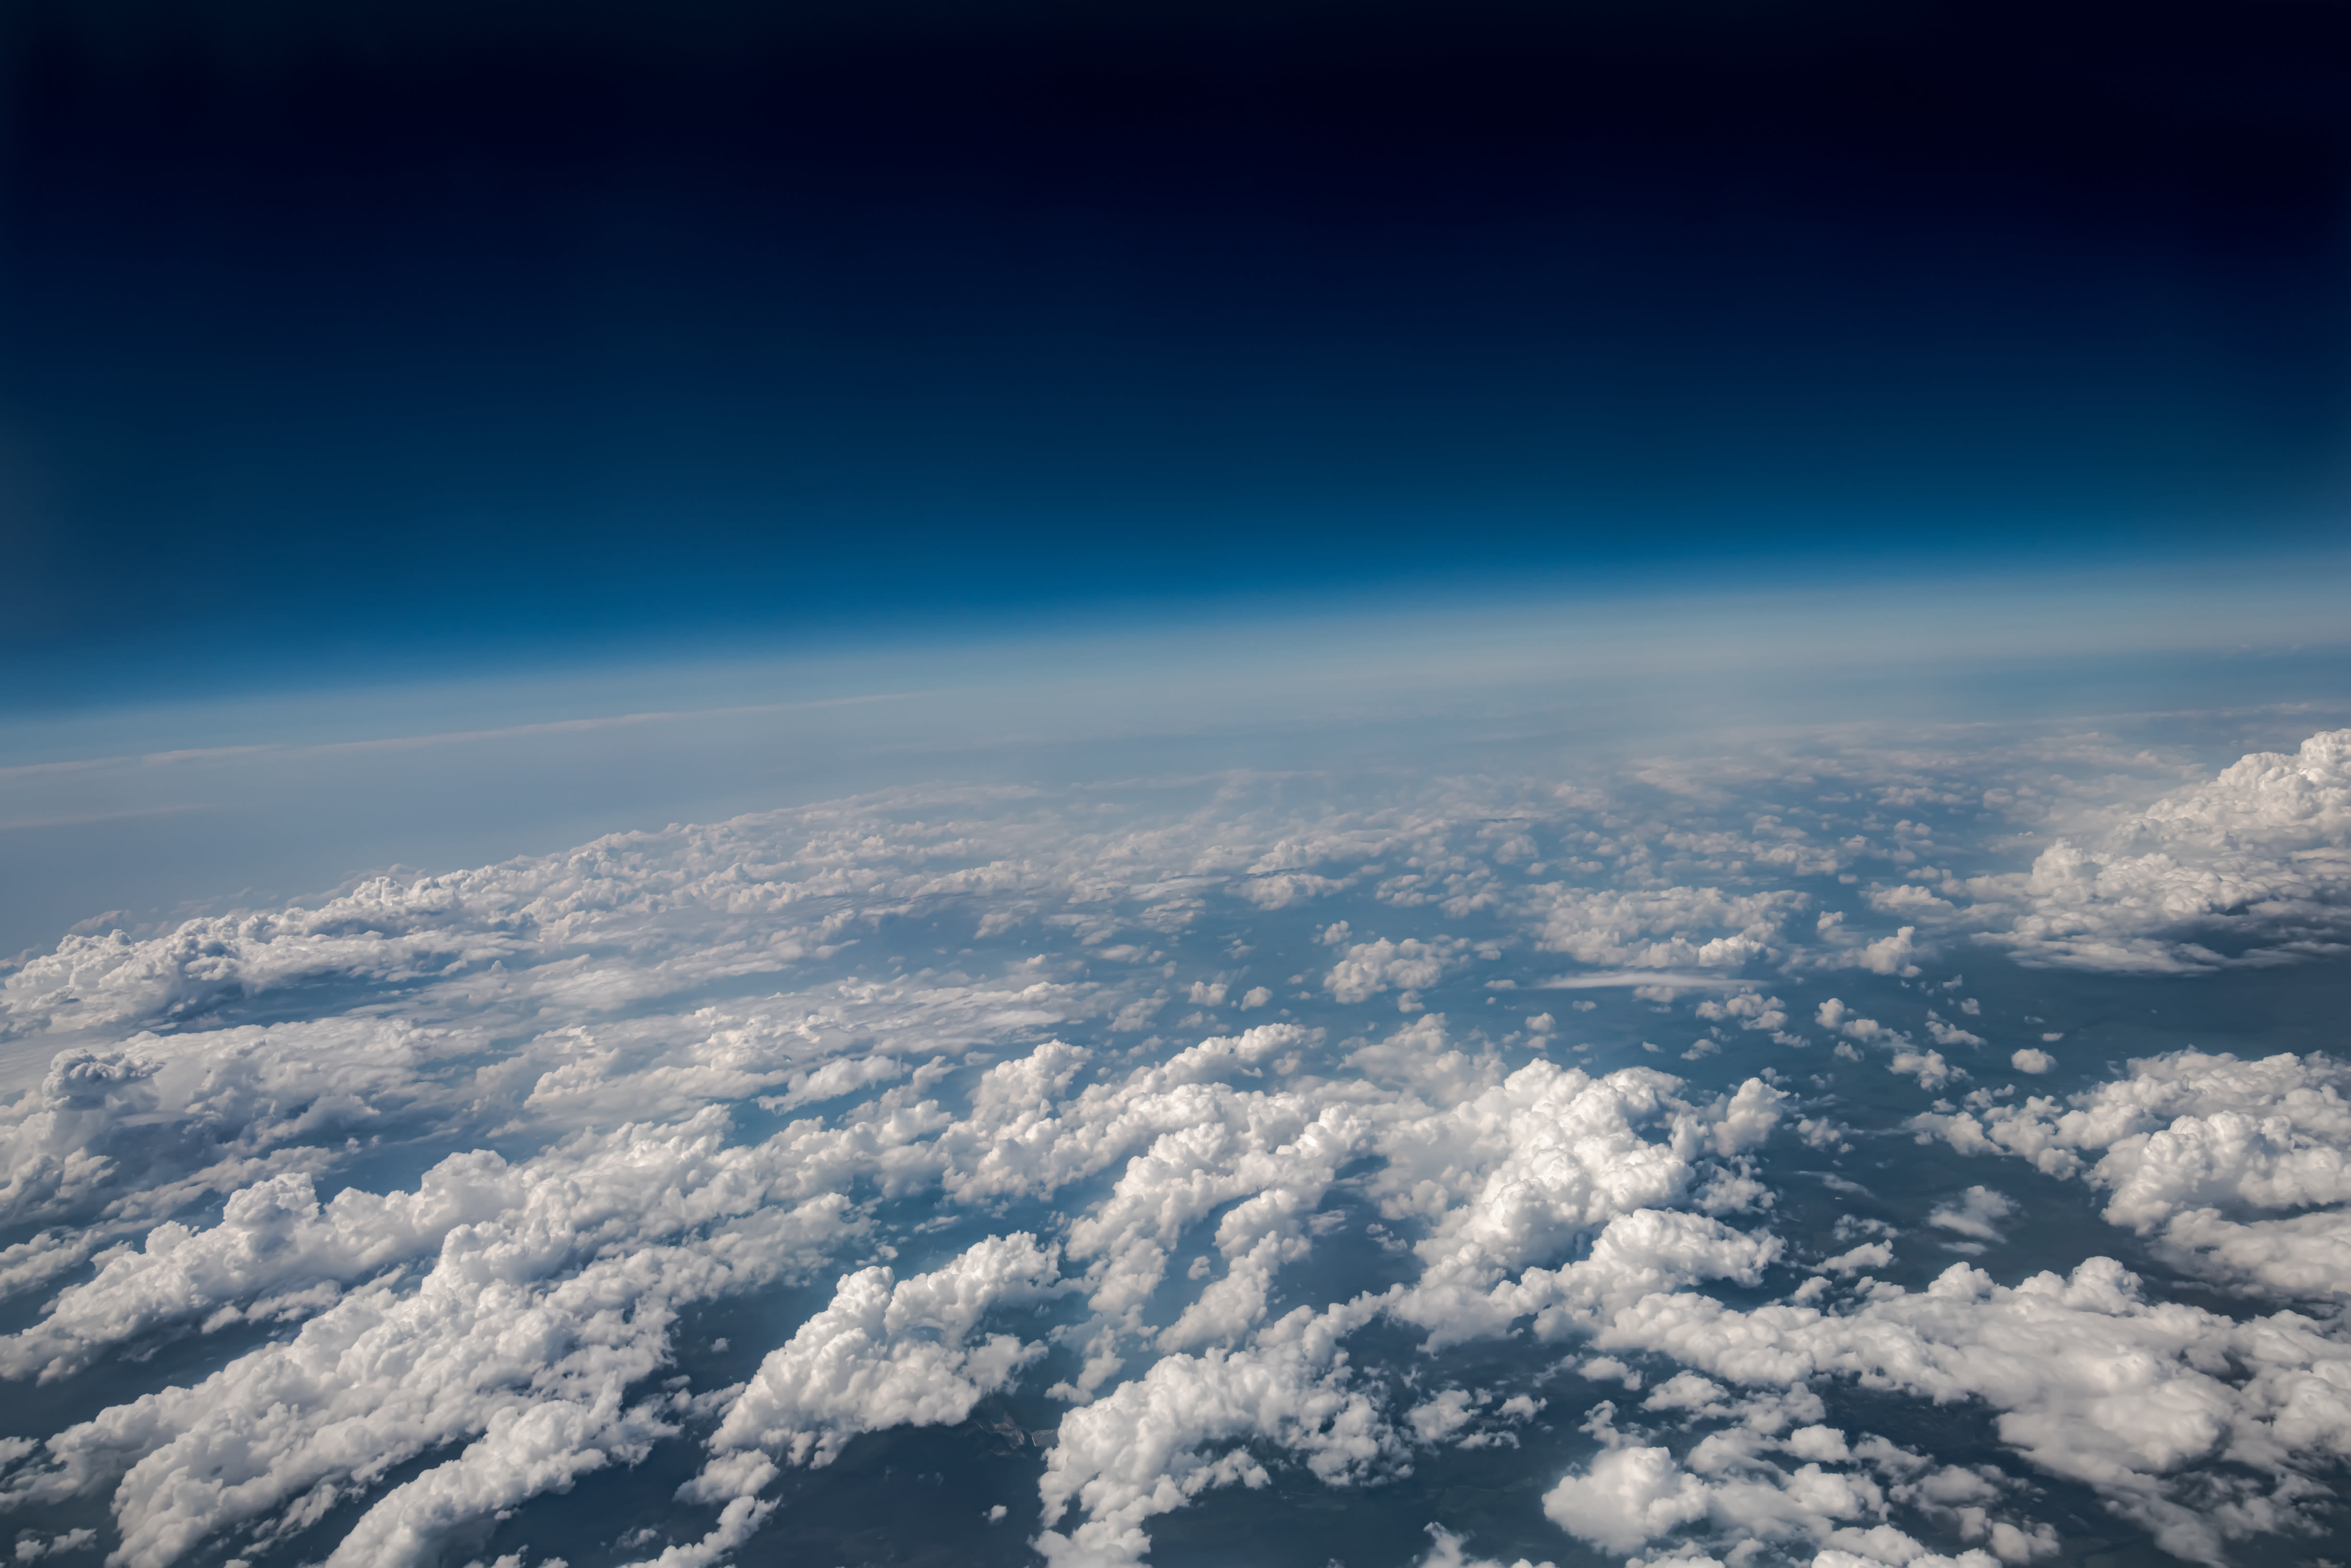 De atmosfeer met daarin de ozonlaag. Foto: Adobe Stock / Andrey Armyagov.